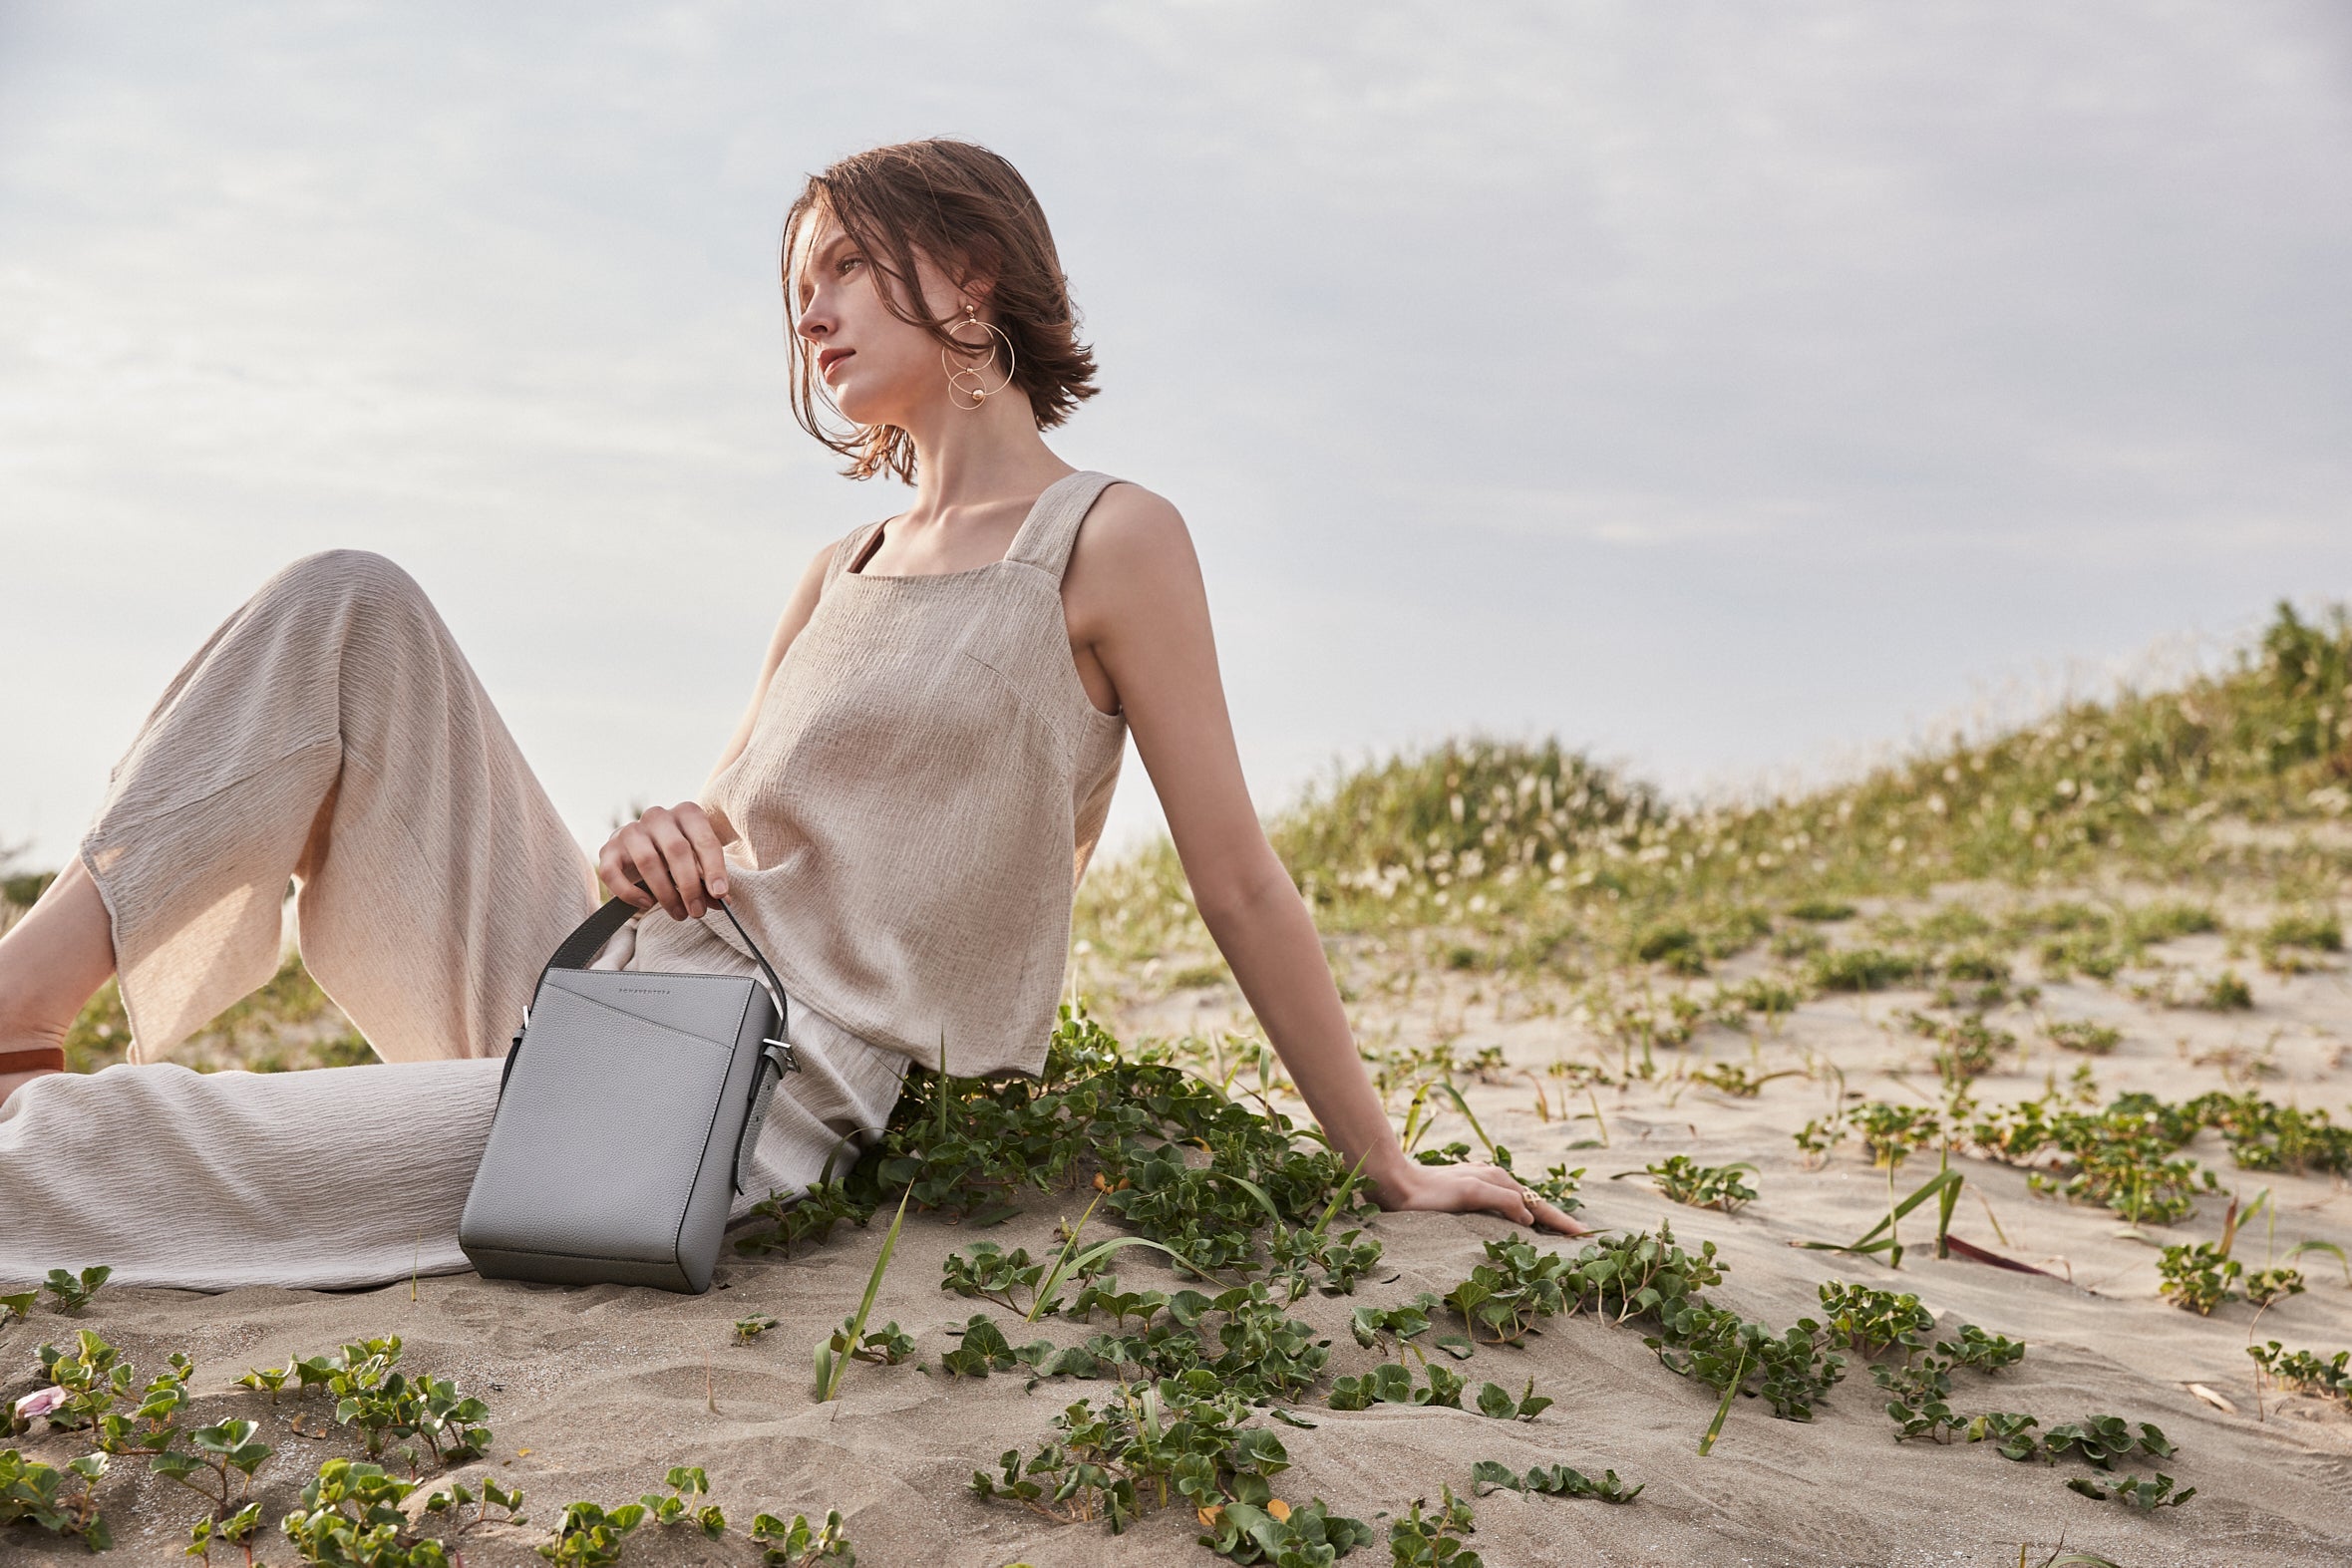 En stilfuldt klædt, miljøbevidst kvinde bærer en bæredygtig lædertaske fra BONAVENTURA på stranden.